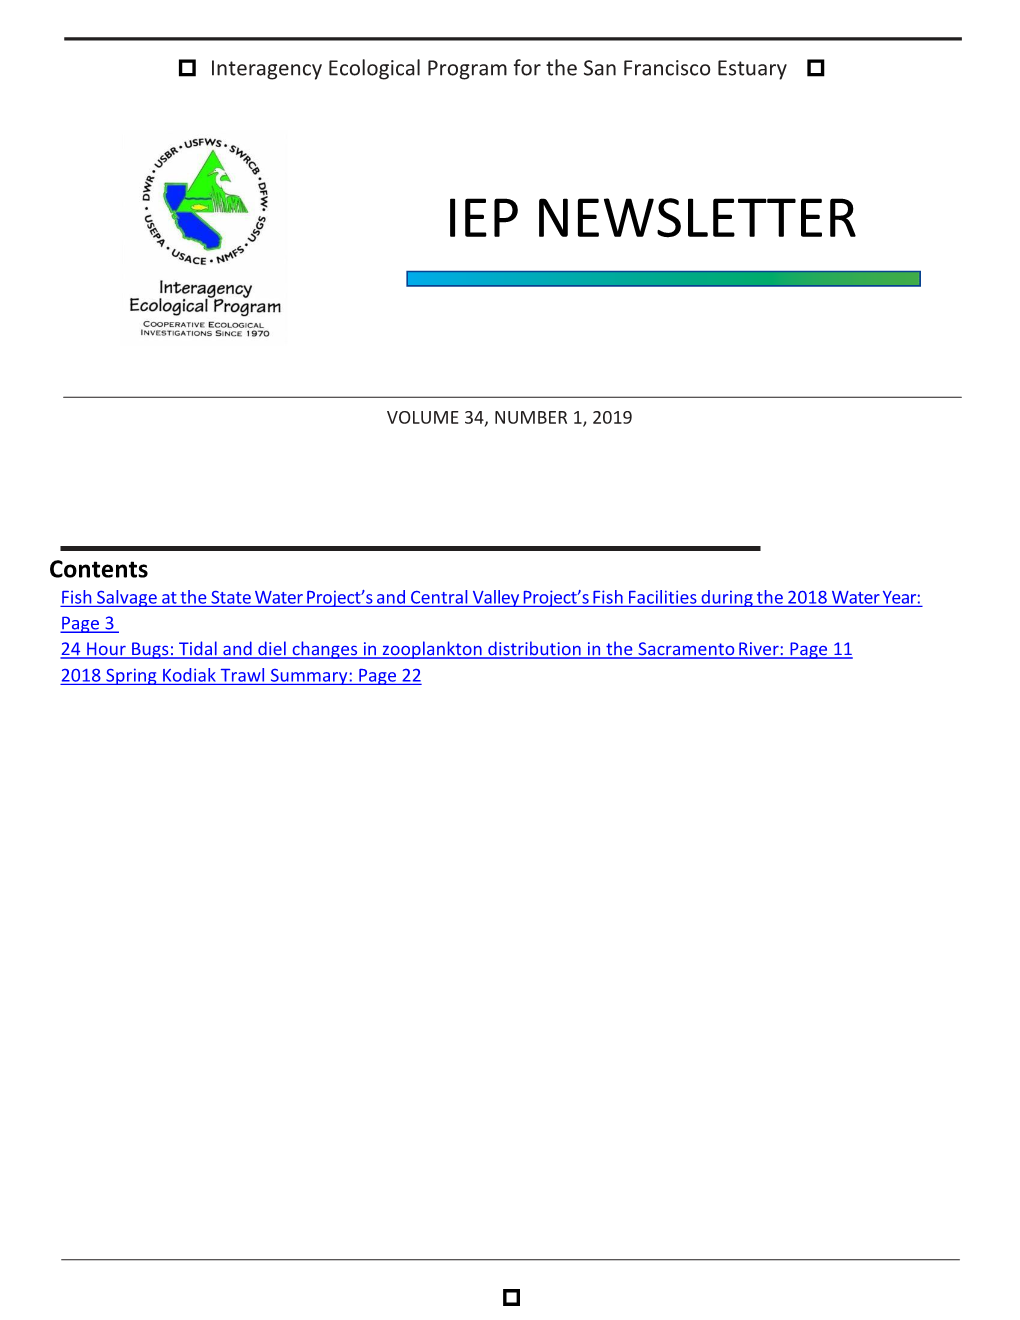 IEP Newsletter Winter 2019 Vol 34 Issue 1